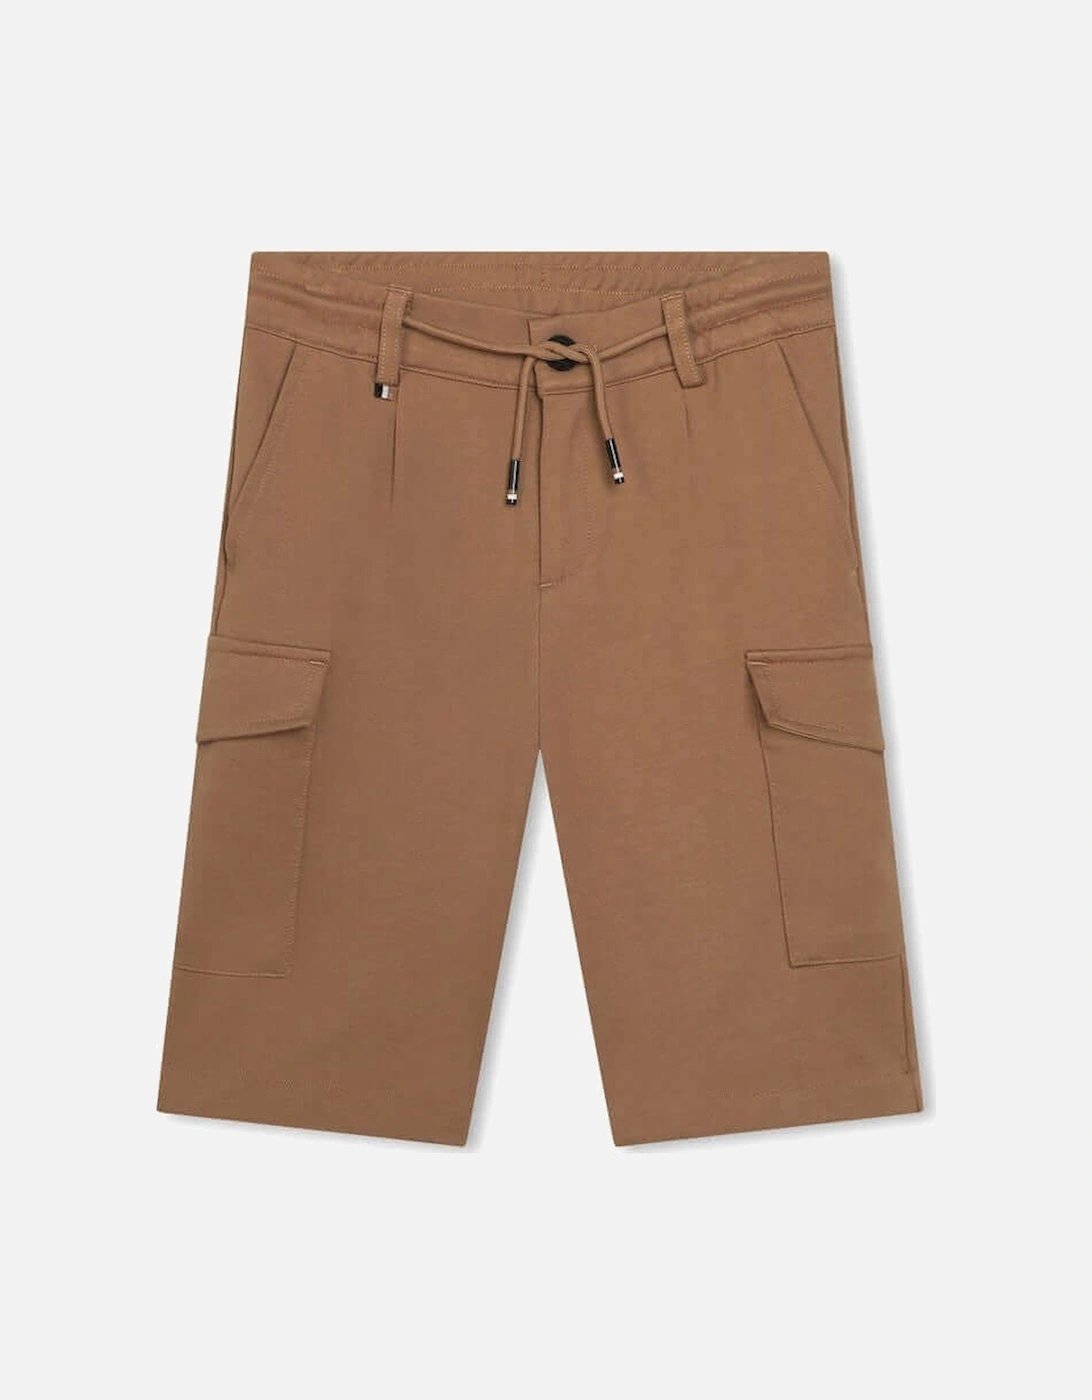 Boys Brown Cargo Shorts, 5 of 4